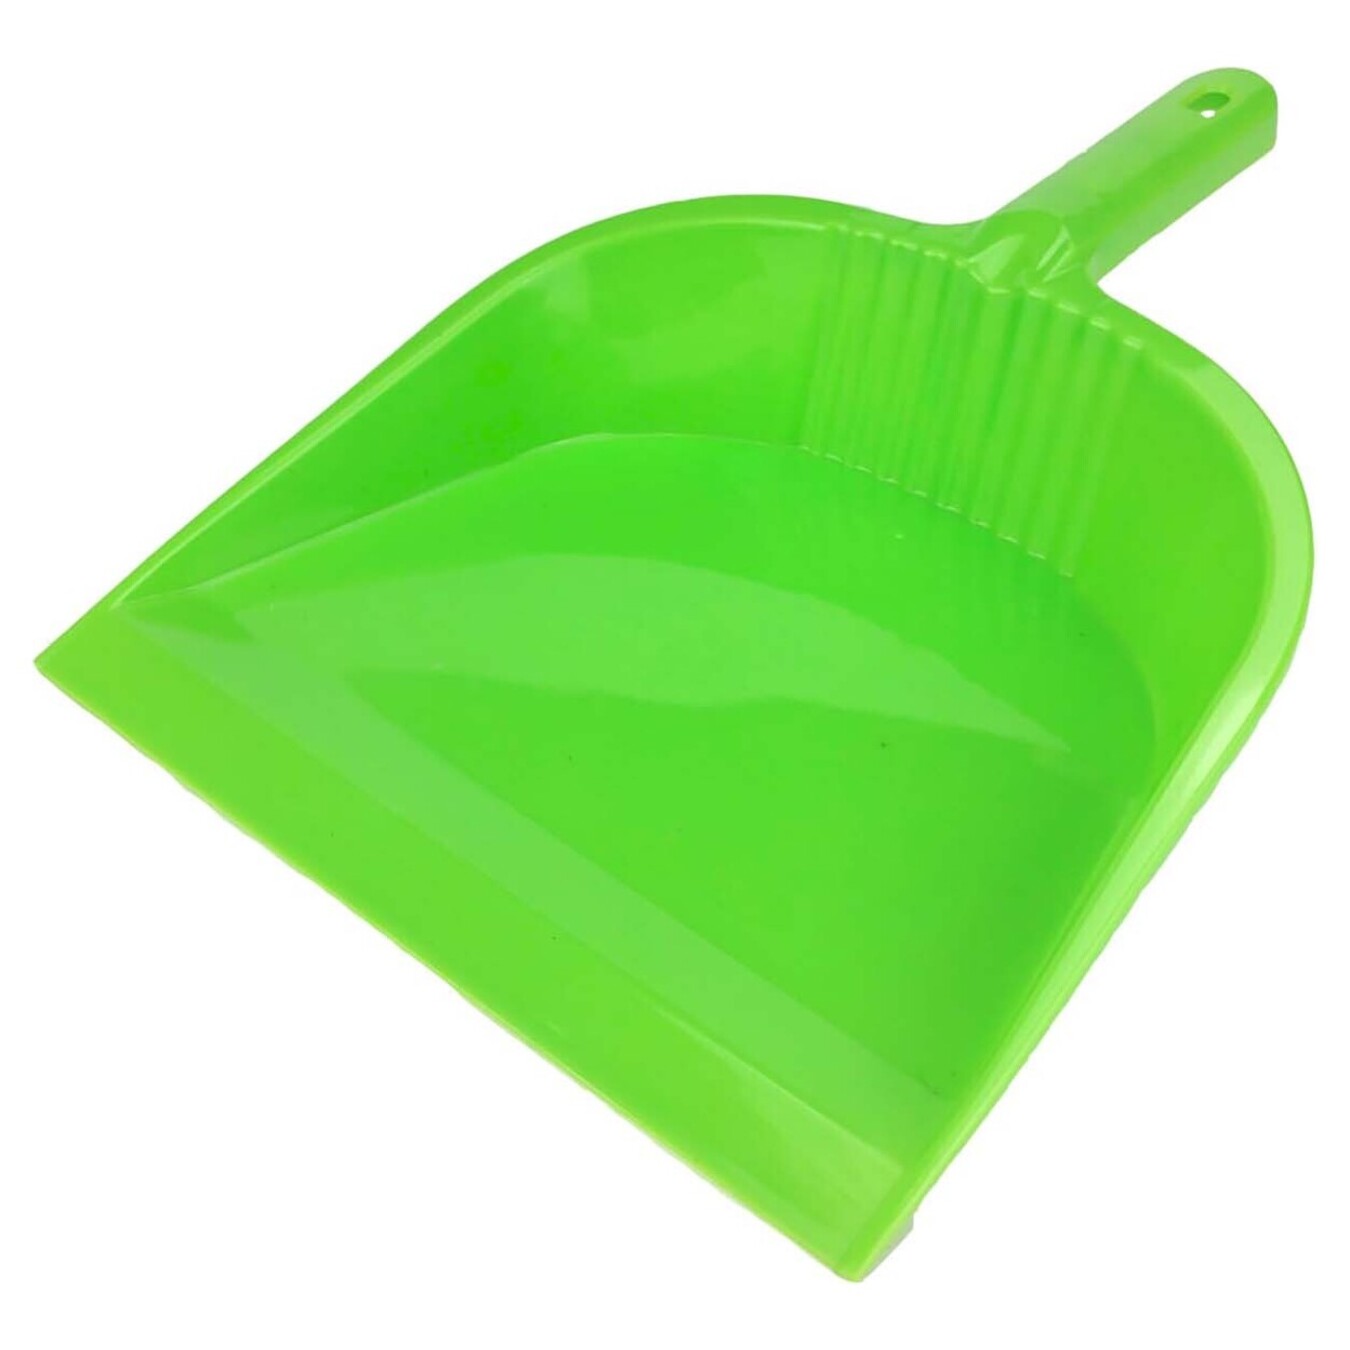 Green garbage scoop